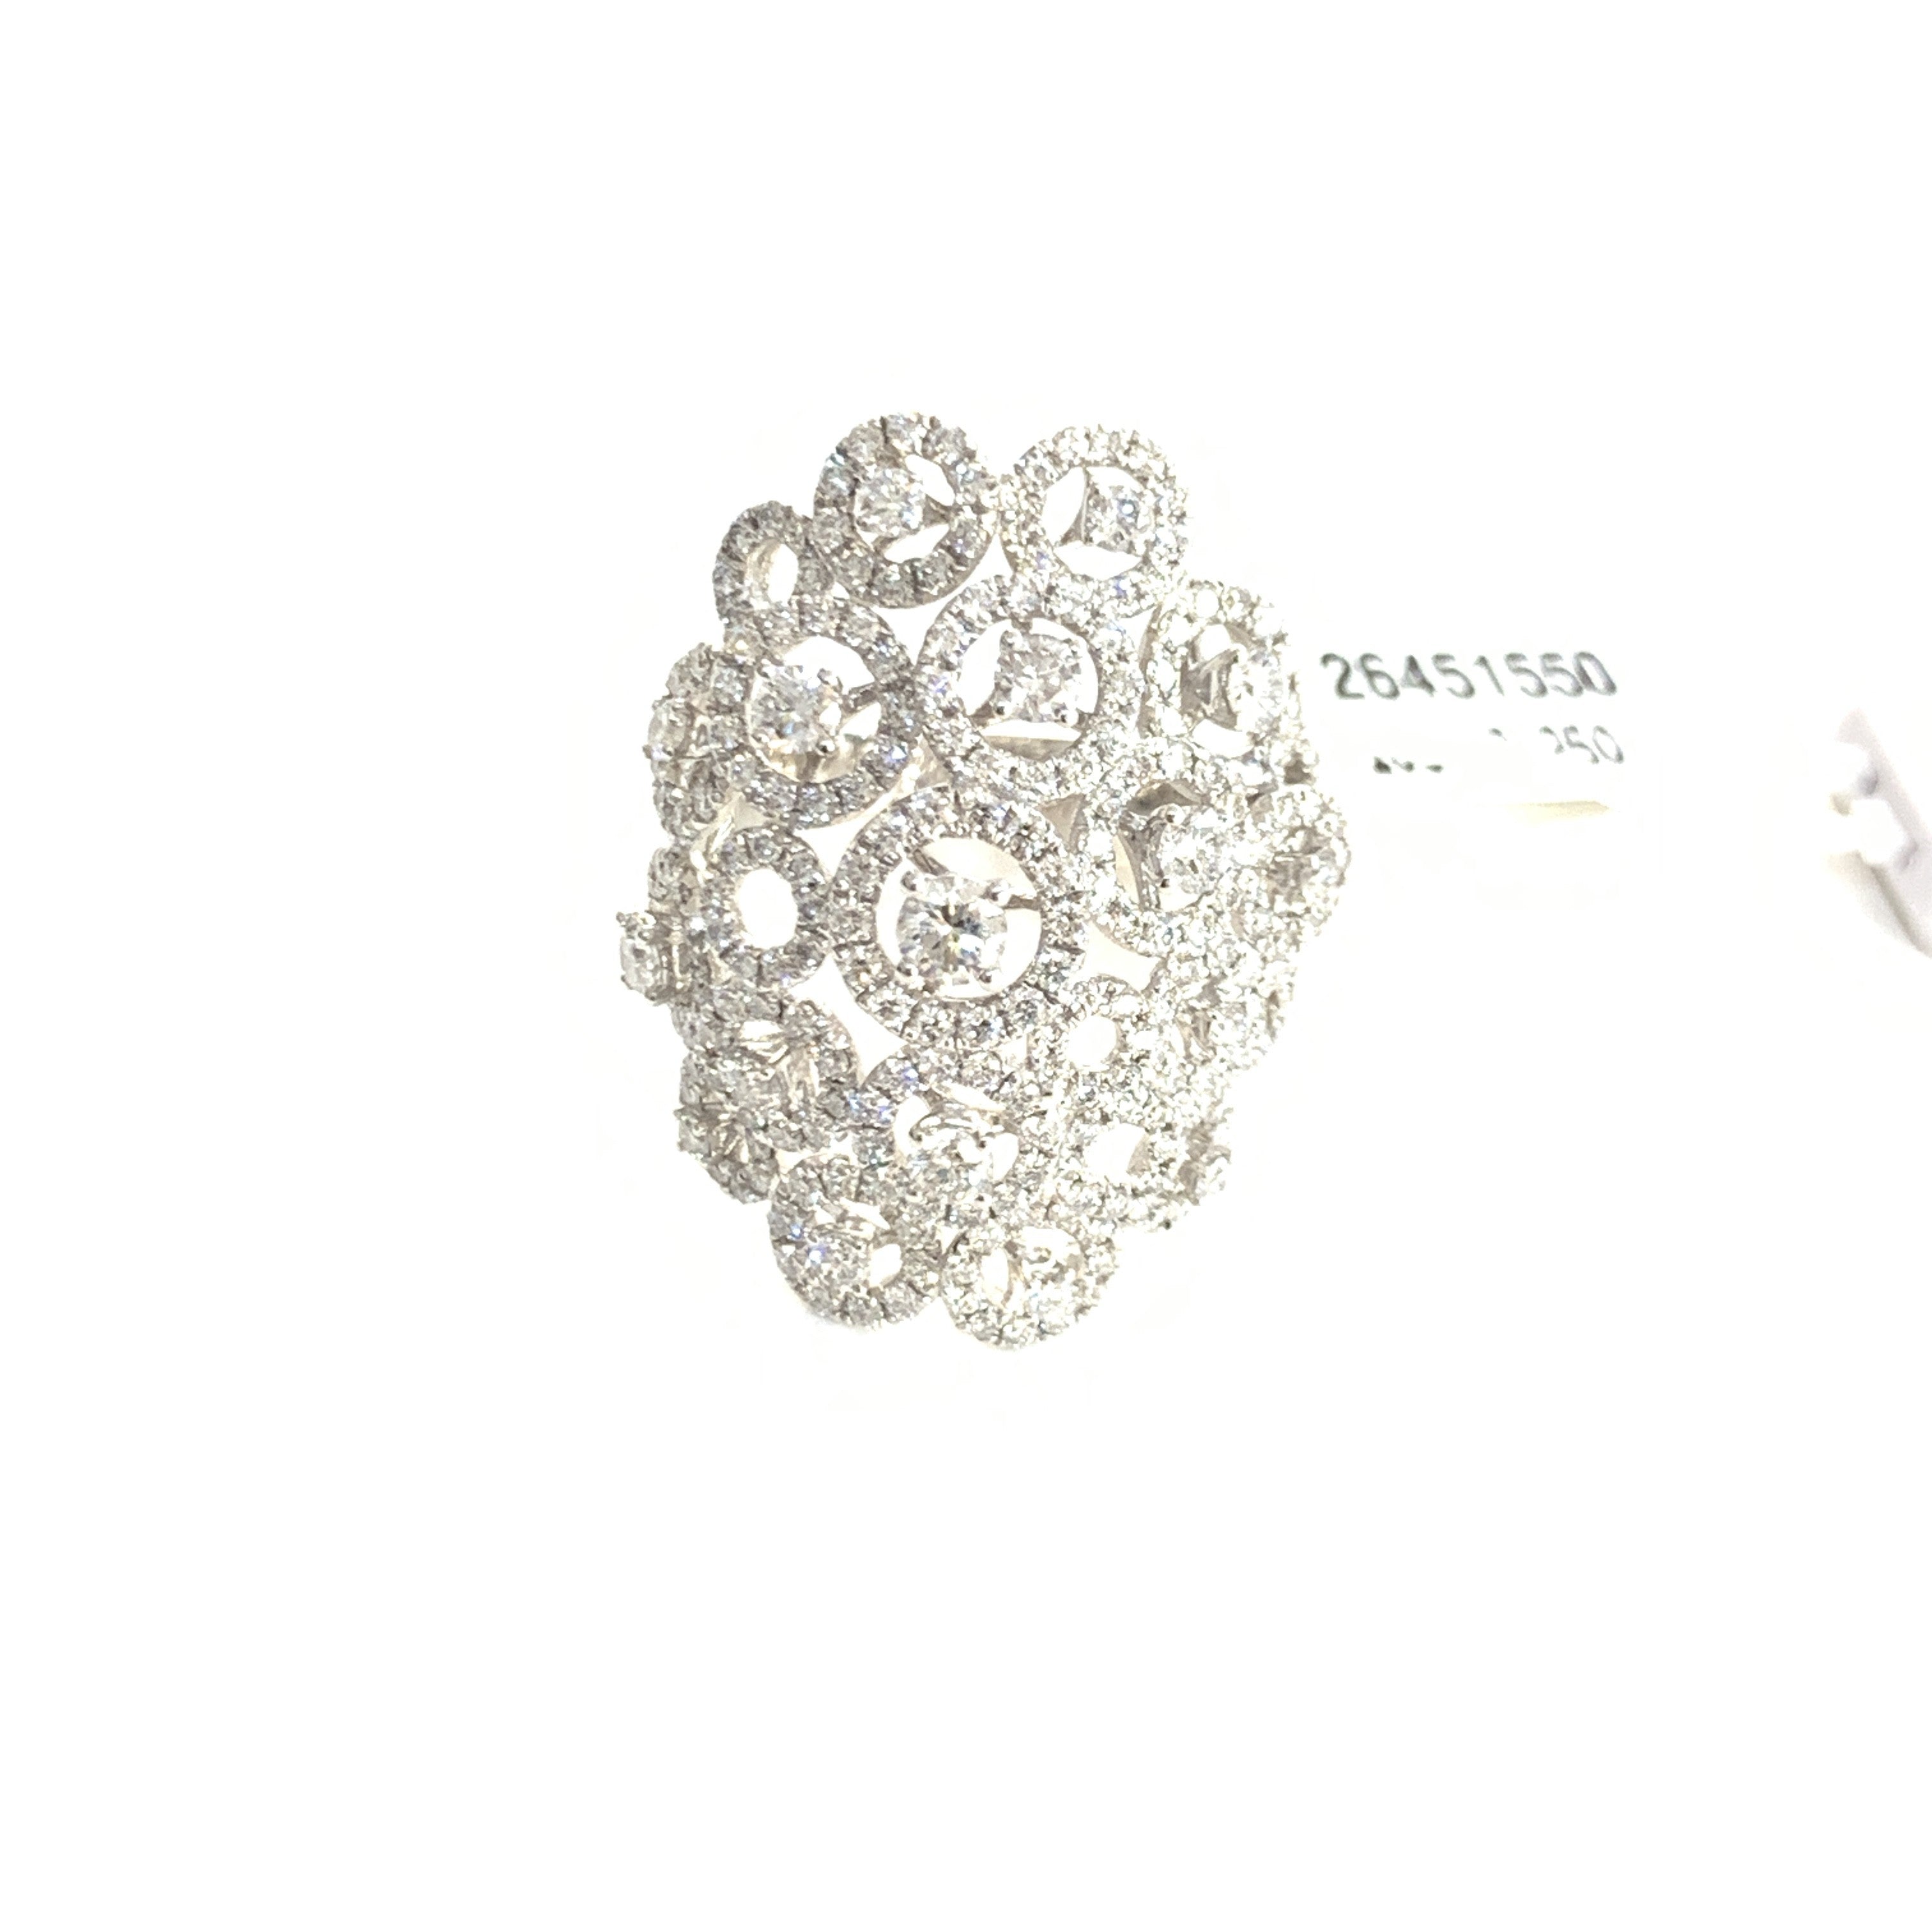 Bianco Milano anello fantasia oro bianco 18kt 9,3g e 275 diamanti totale 2,85ct AN.26451550 - Gioielleria Capodagli